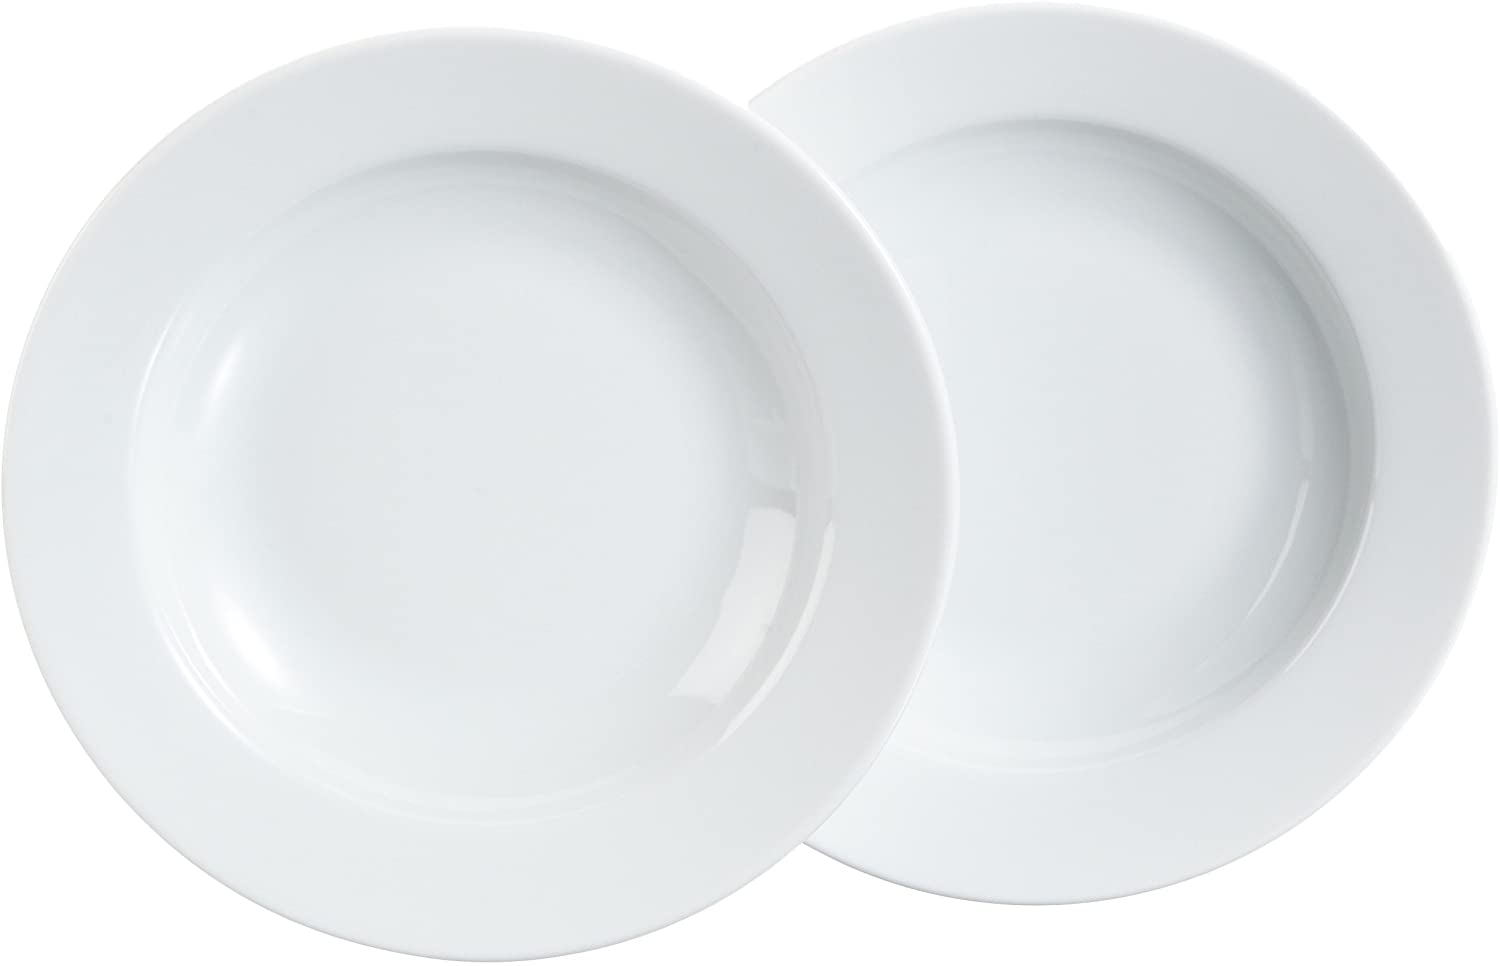 Kahla Pronto 57E149A90057C Soup Dishes Set of 2 White